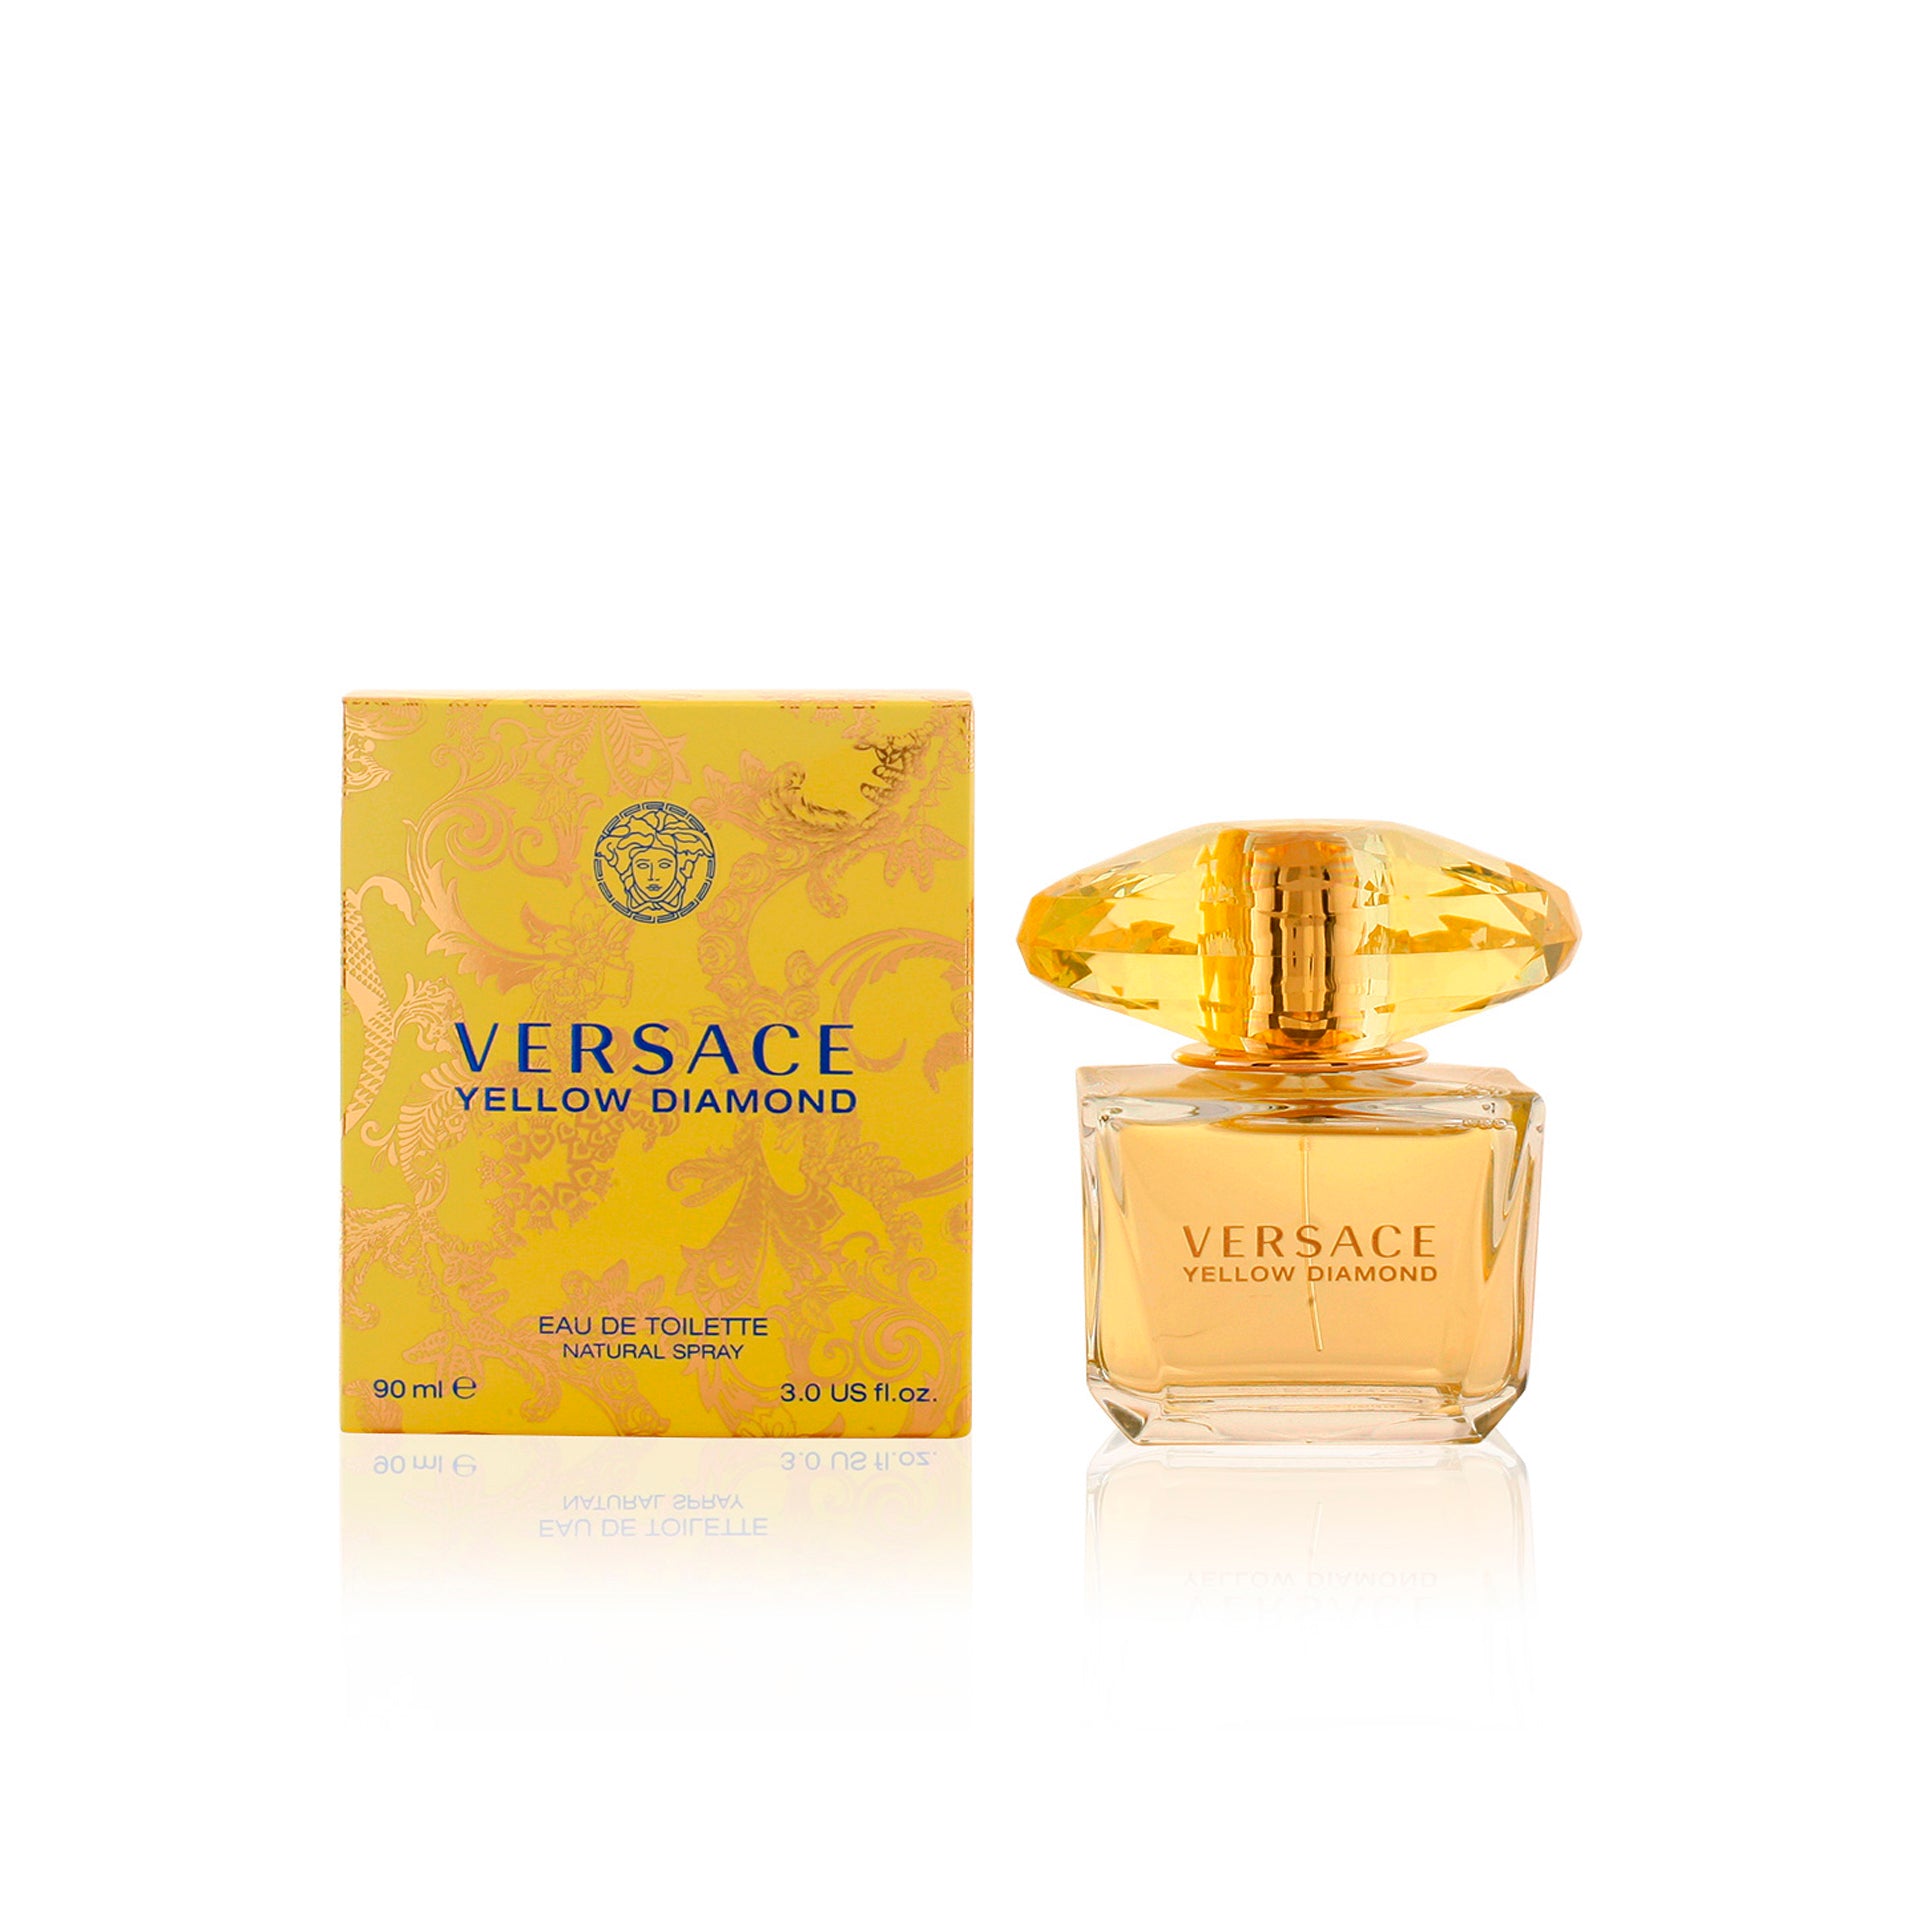 Versace - Vaporisateur Eau De Toilette Yellow Diamond 90 Ml